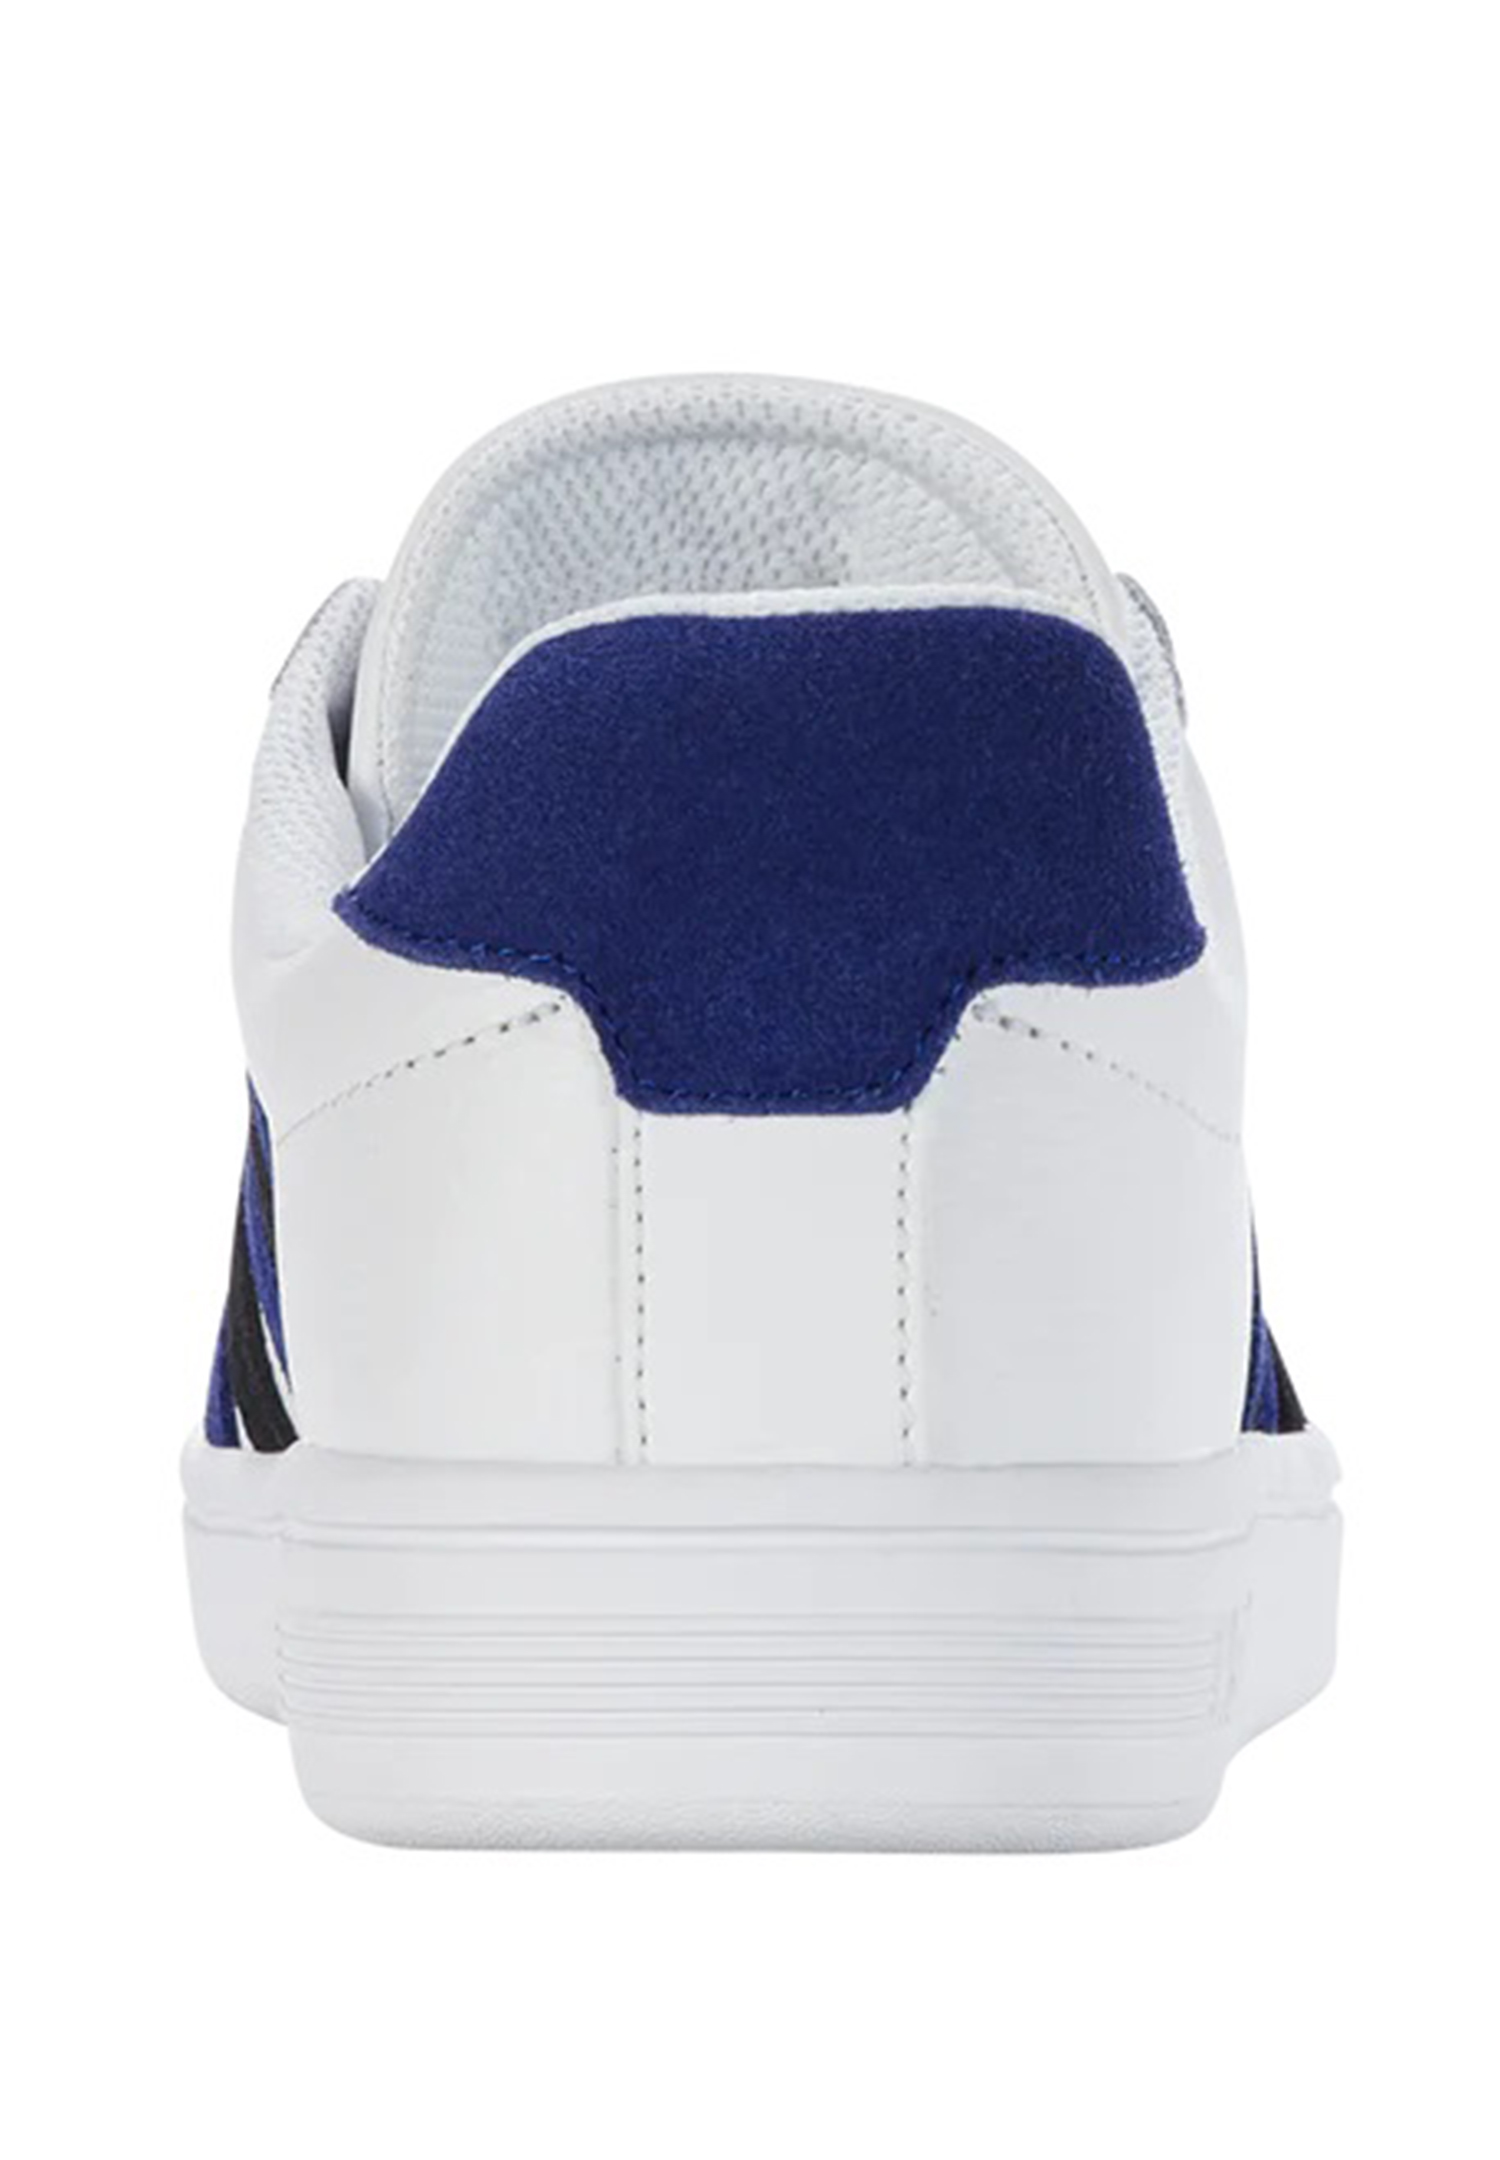 K-SWISS Court TIEBREAK Herren Sneaker Sportschuh 07011-984-M Weiß/blau